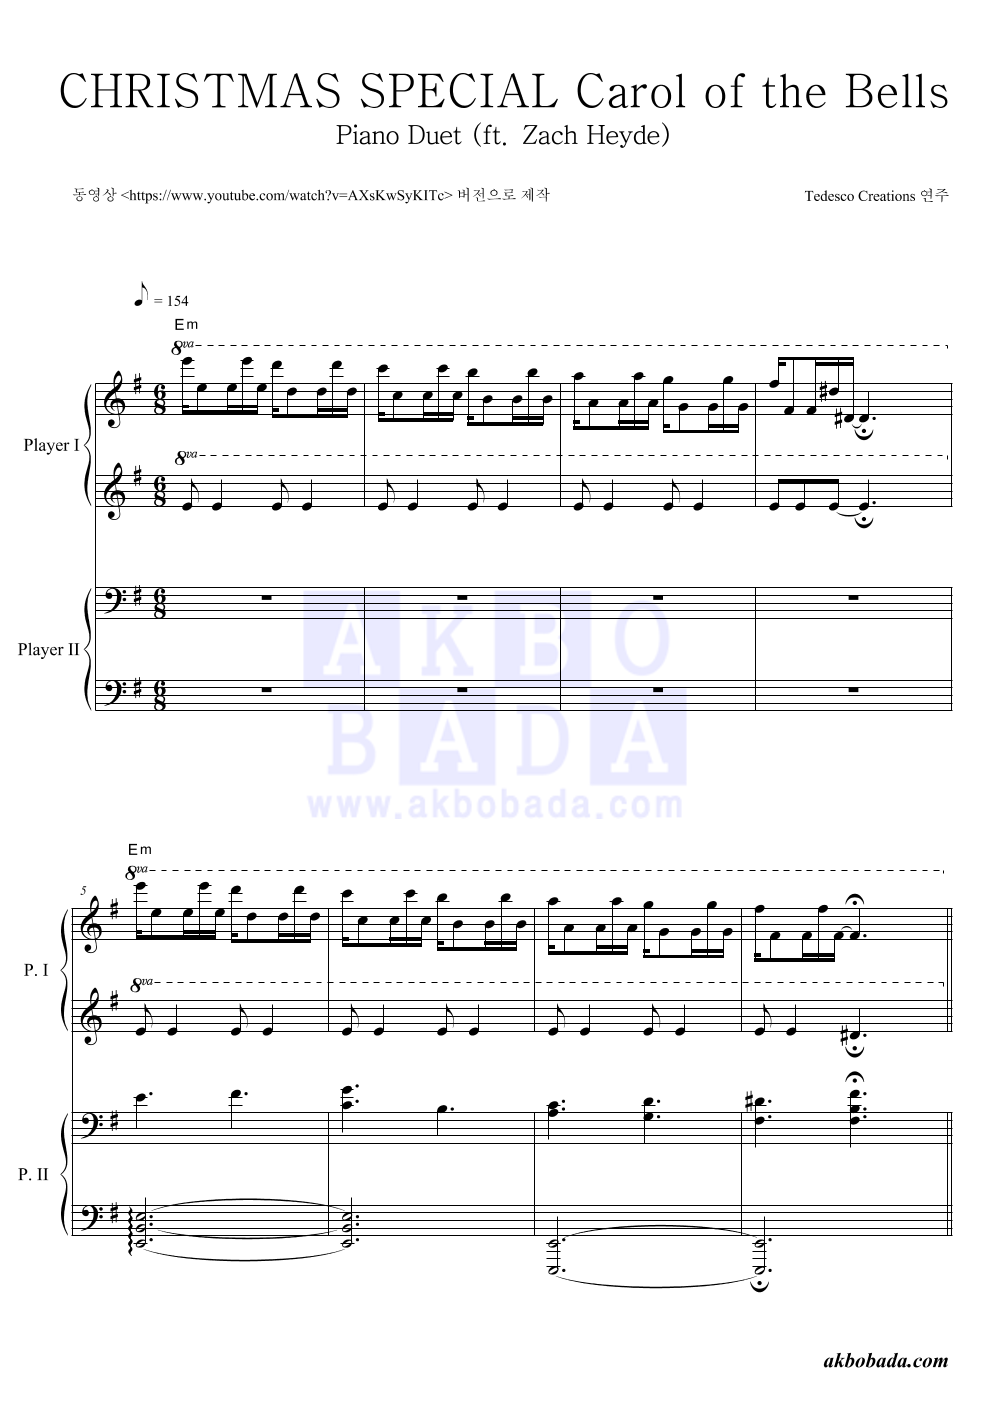 Tedesco & Heyde - CHRISTMAS SPECIAL Carol of the Bells - Piano Duet (ft. Zach Heyde) 연탄곡 악보 